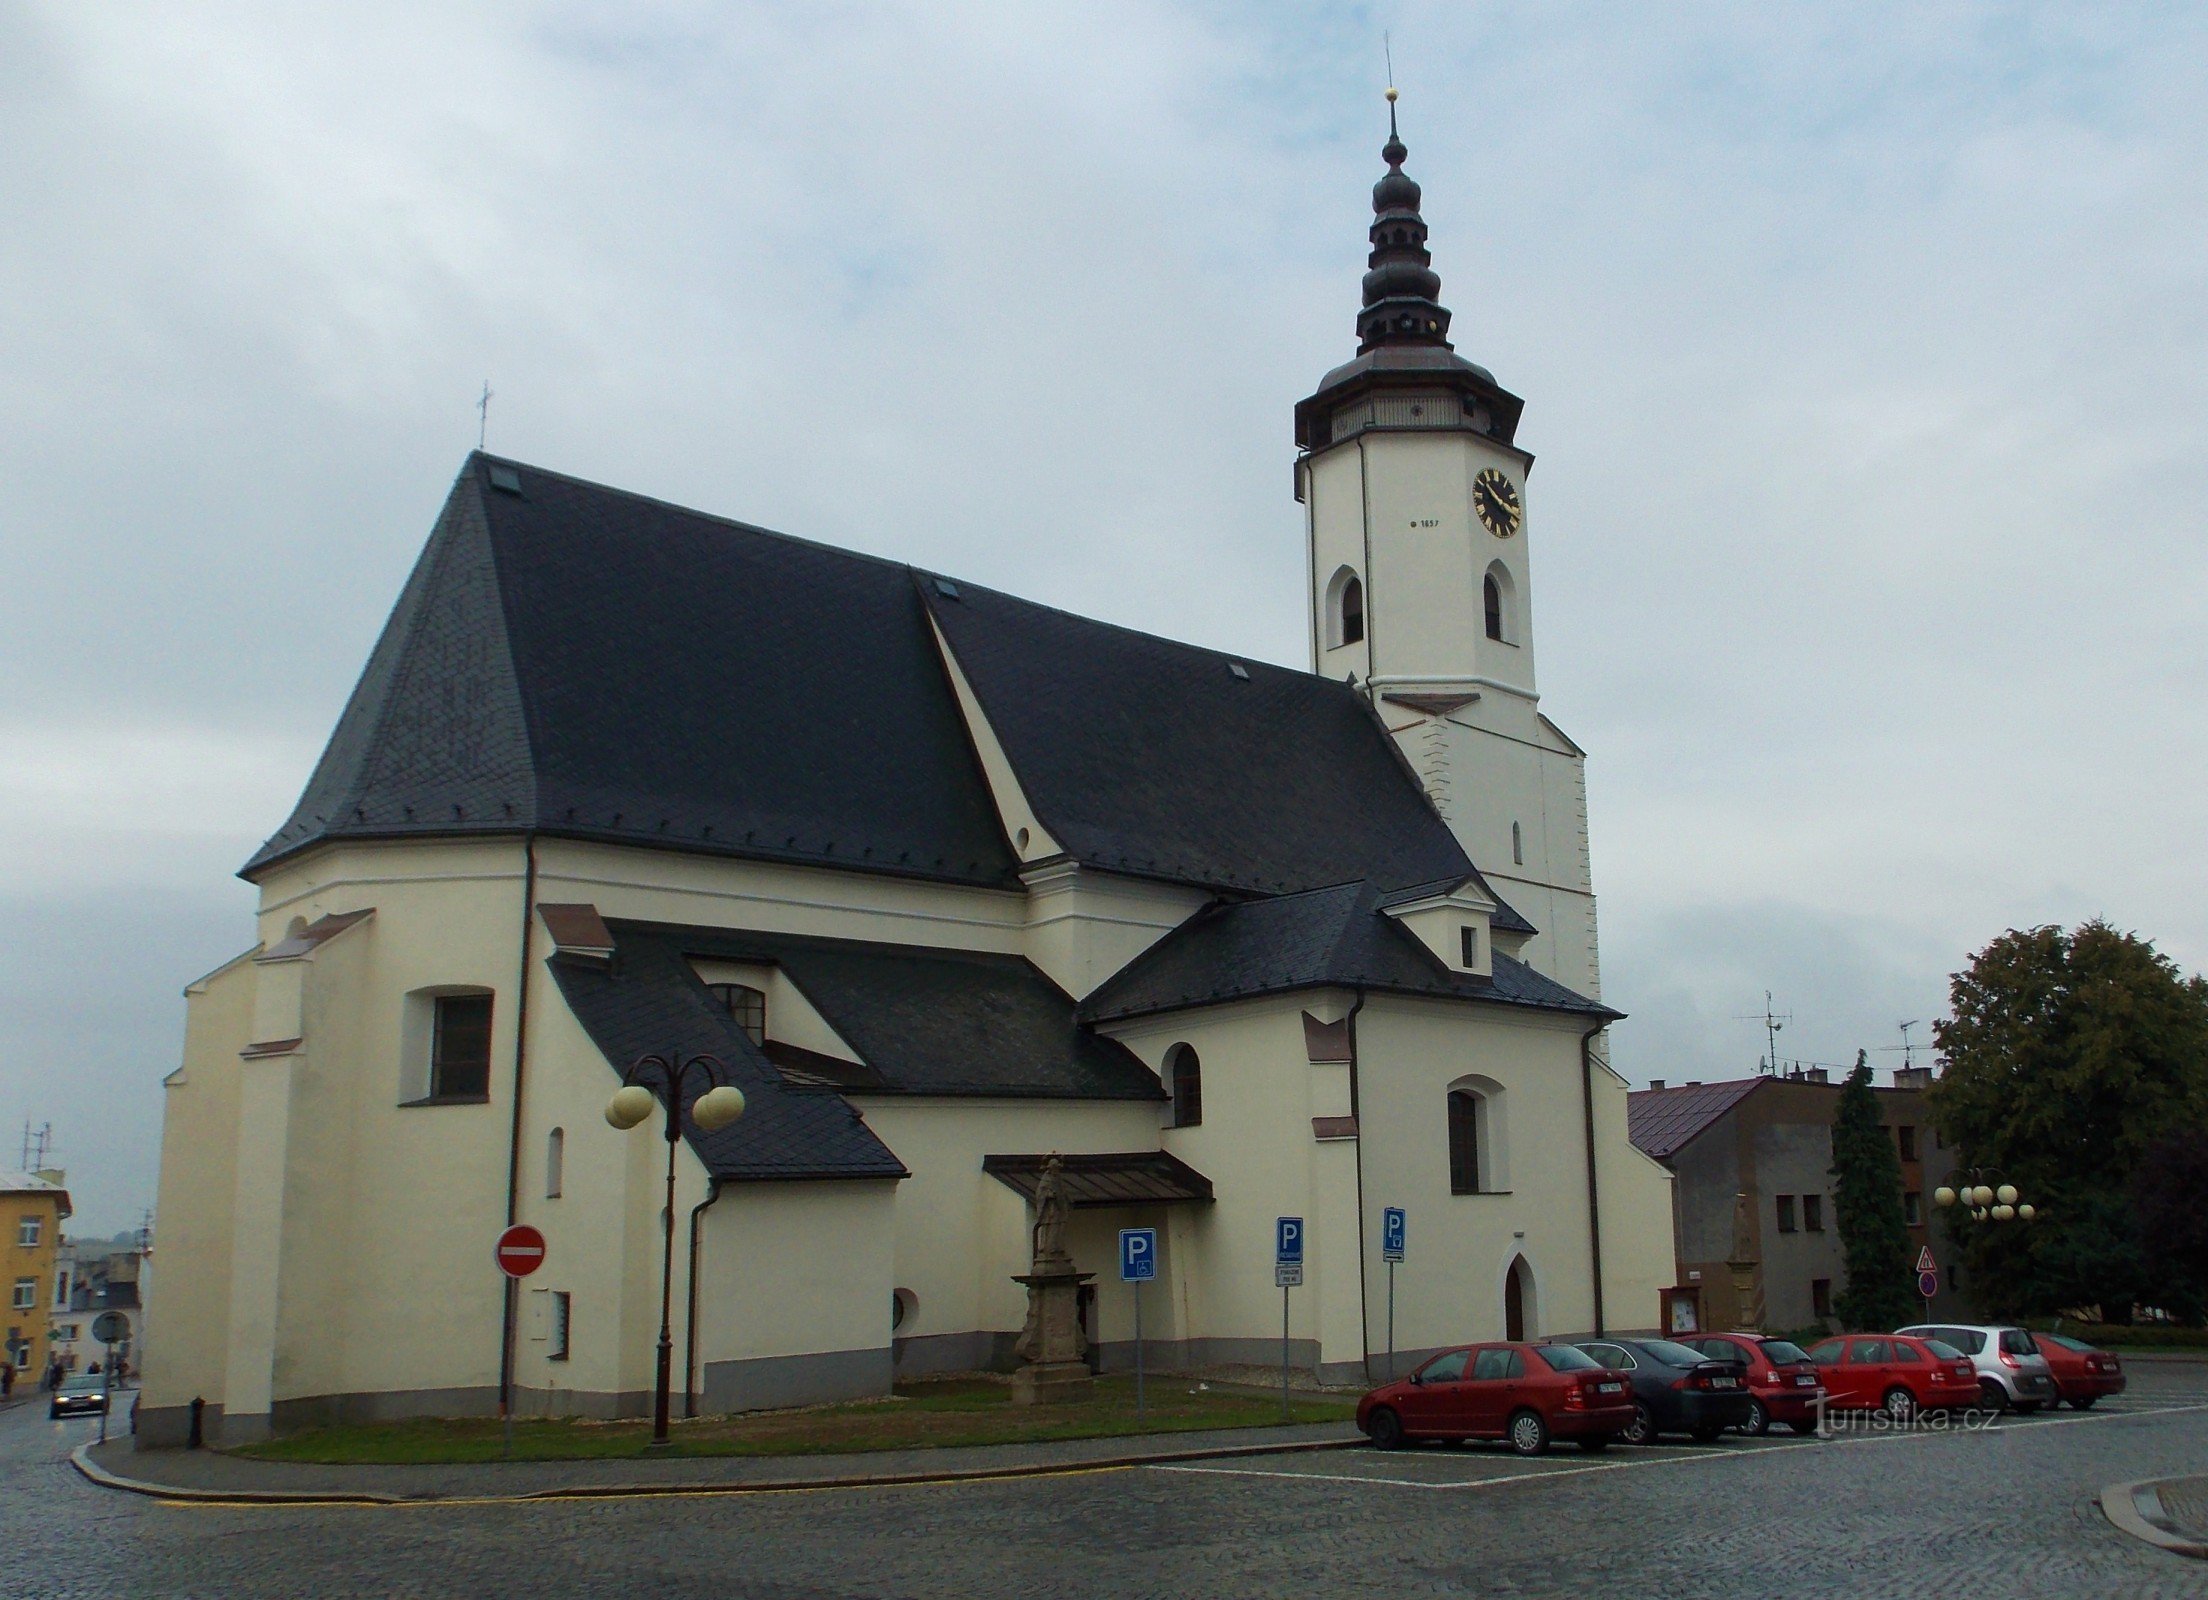 Kerk van St. Mikuláš - het herkenningspunt van het Silezische plein in Bílovec